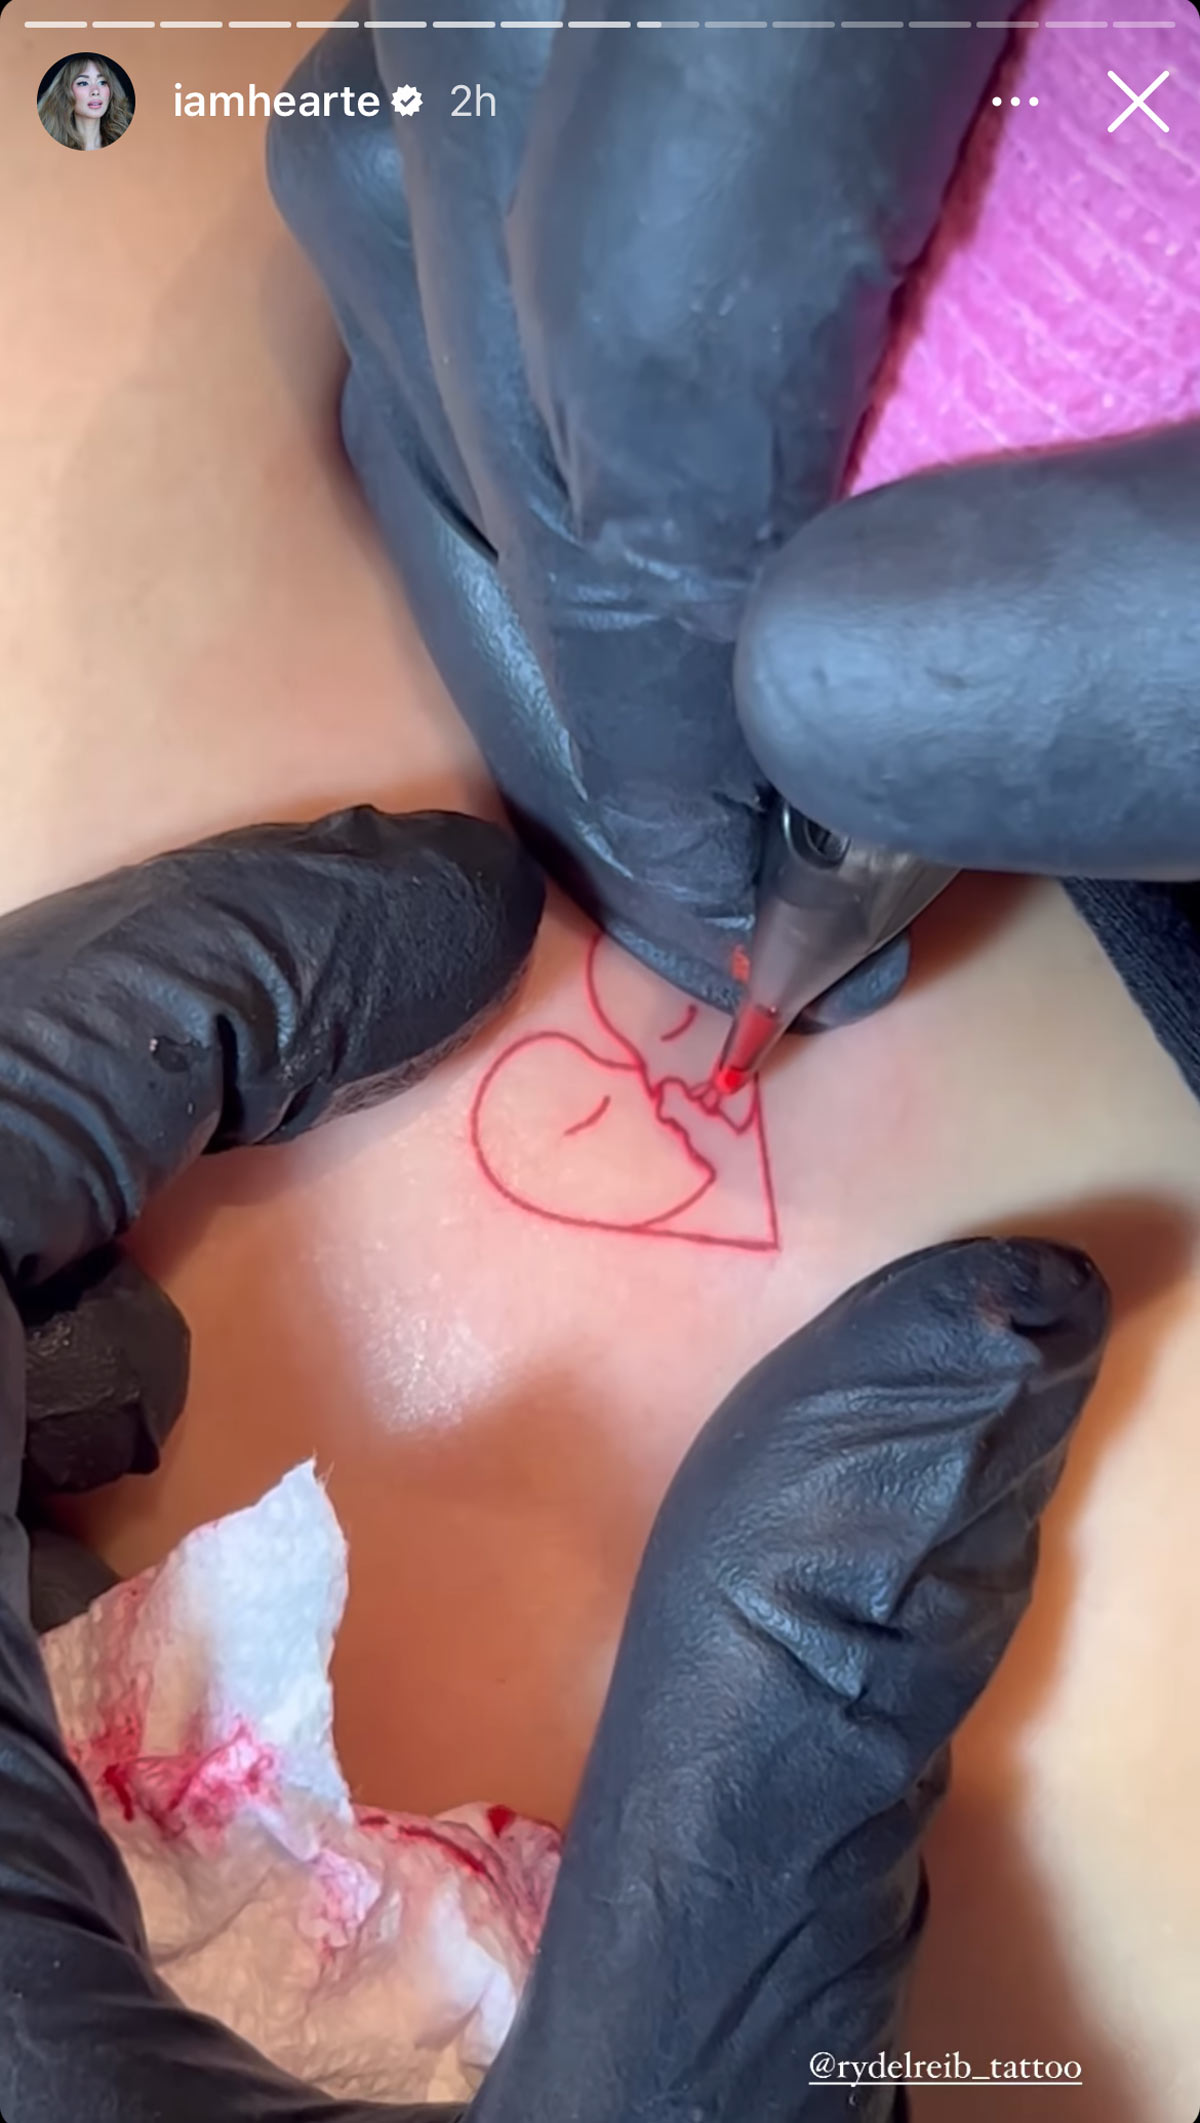 heart evangelista designs her own back tattoo